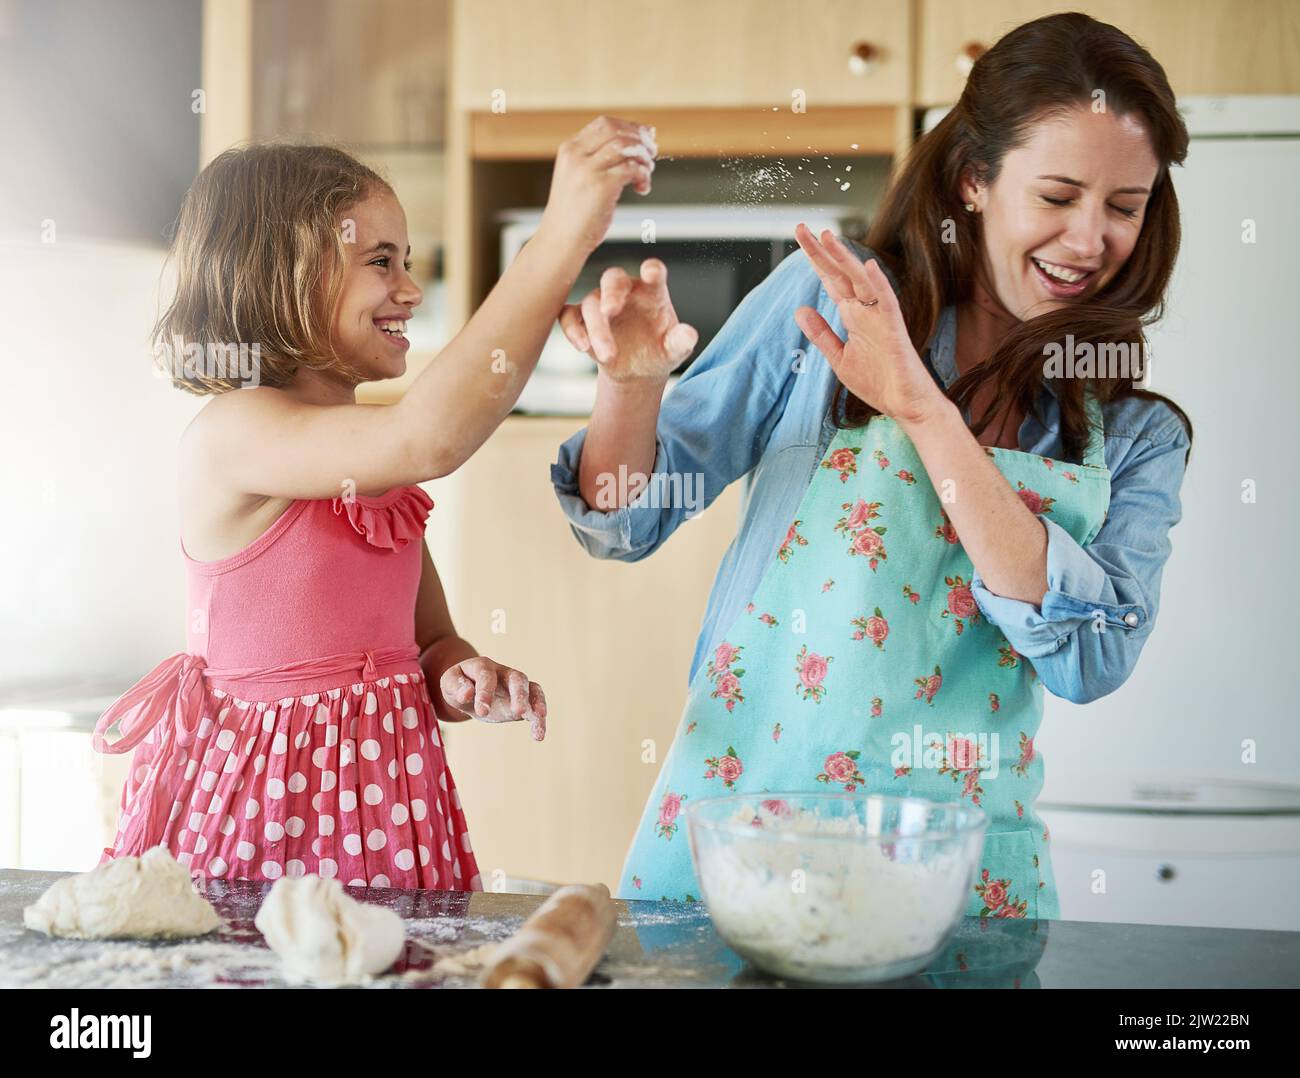 Secondo la ricetta, si dovrebbe aggiungere la farina: Una madre e sua figlia che si divertono mentre si cuocono in cucina. Foto Stock